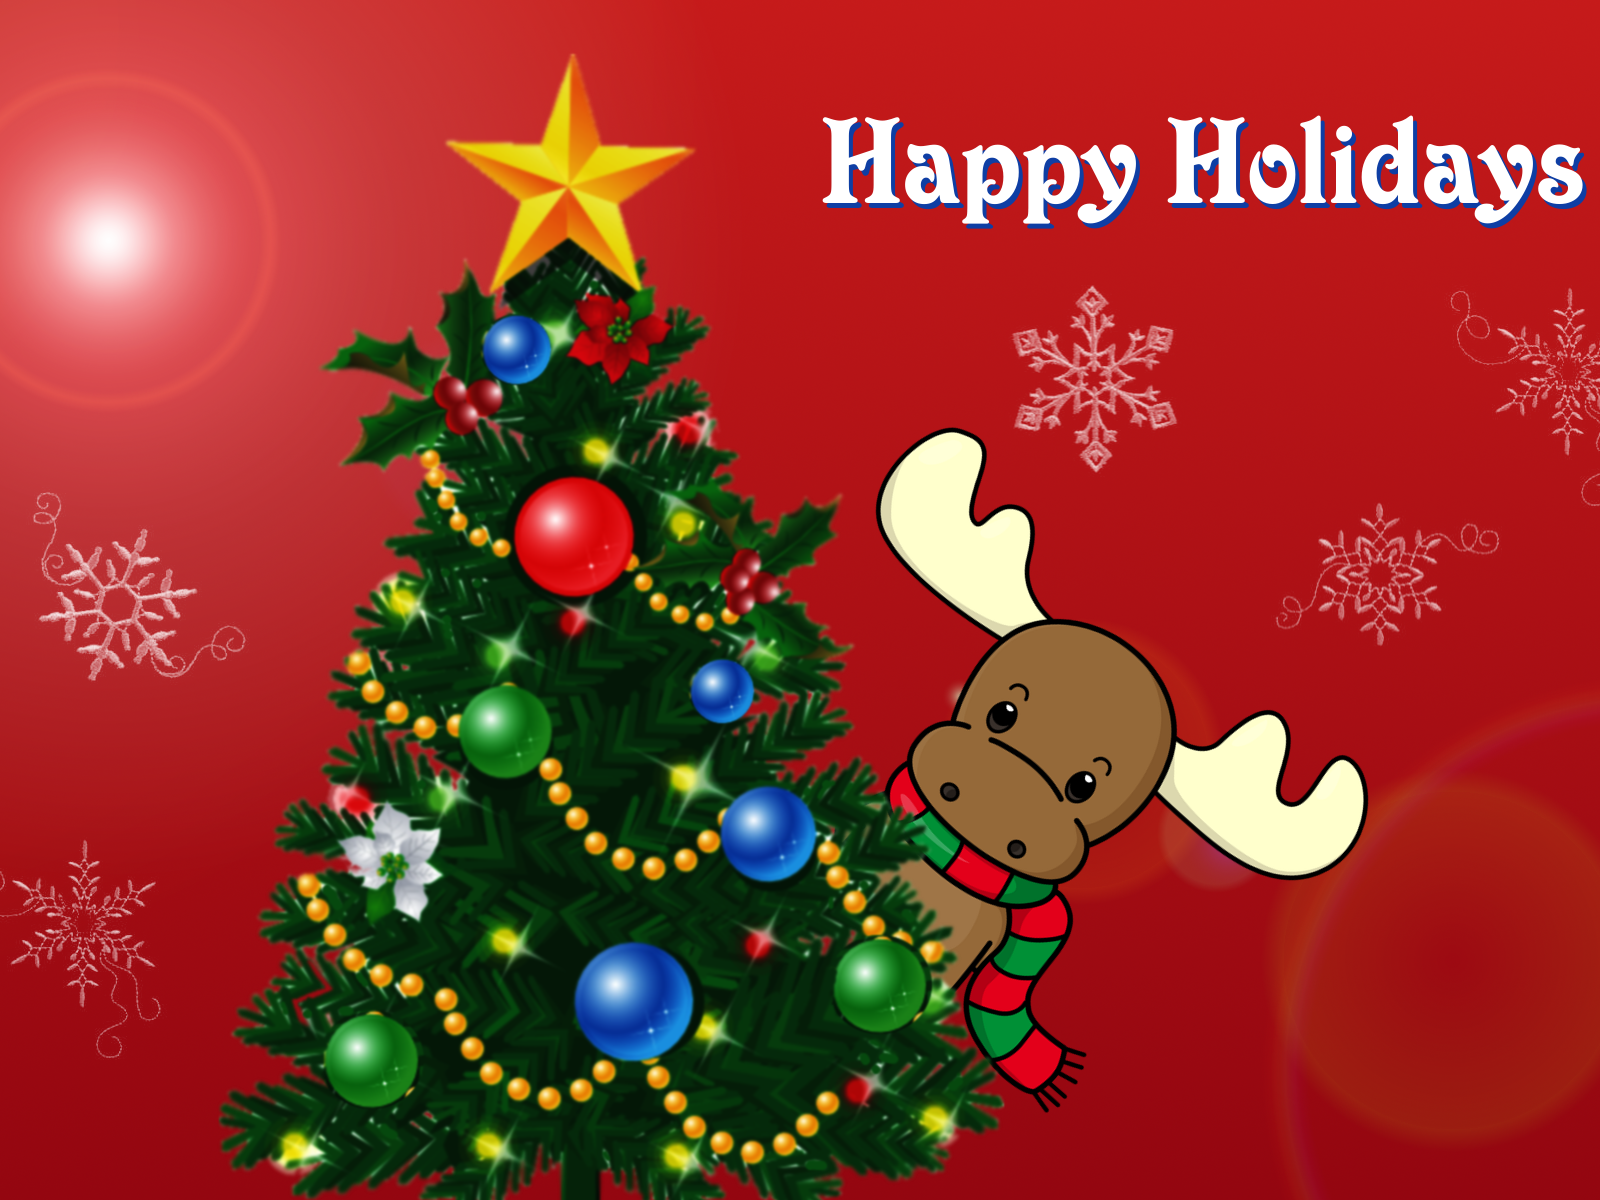 felice giorno di natale carta da parati,albero di natale,ornamento di natale,decorazione natalizia,natale,abete rosso colorado